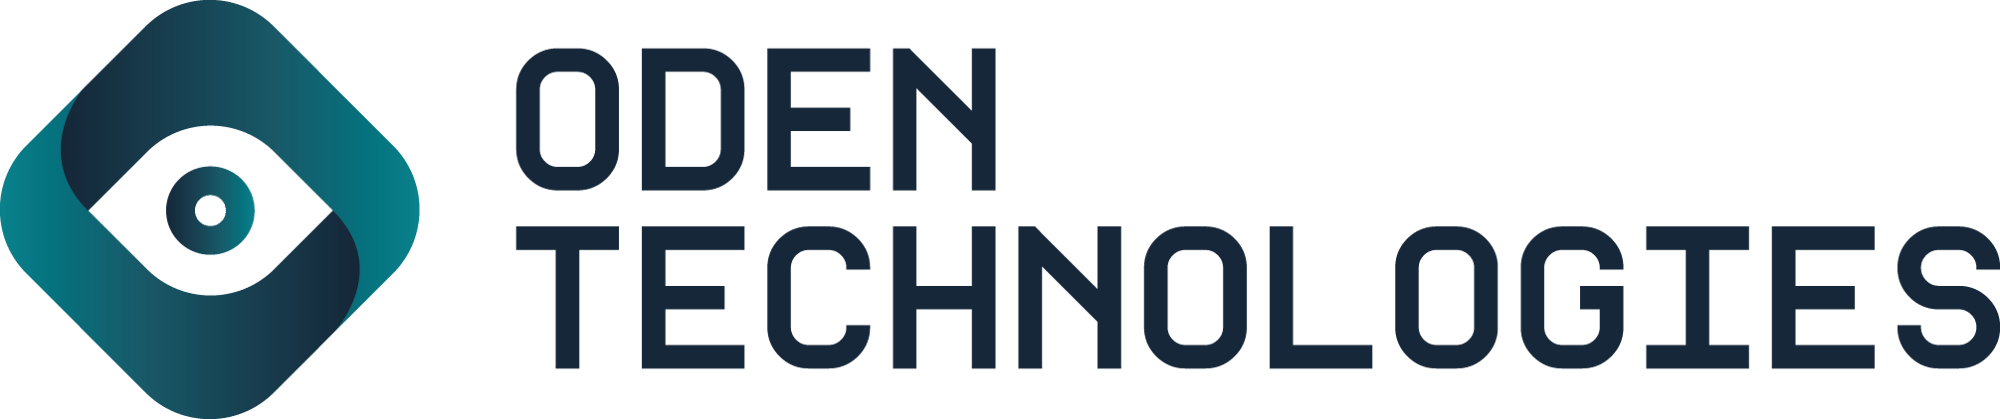 Oden Technologies